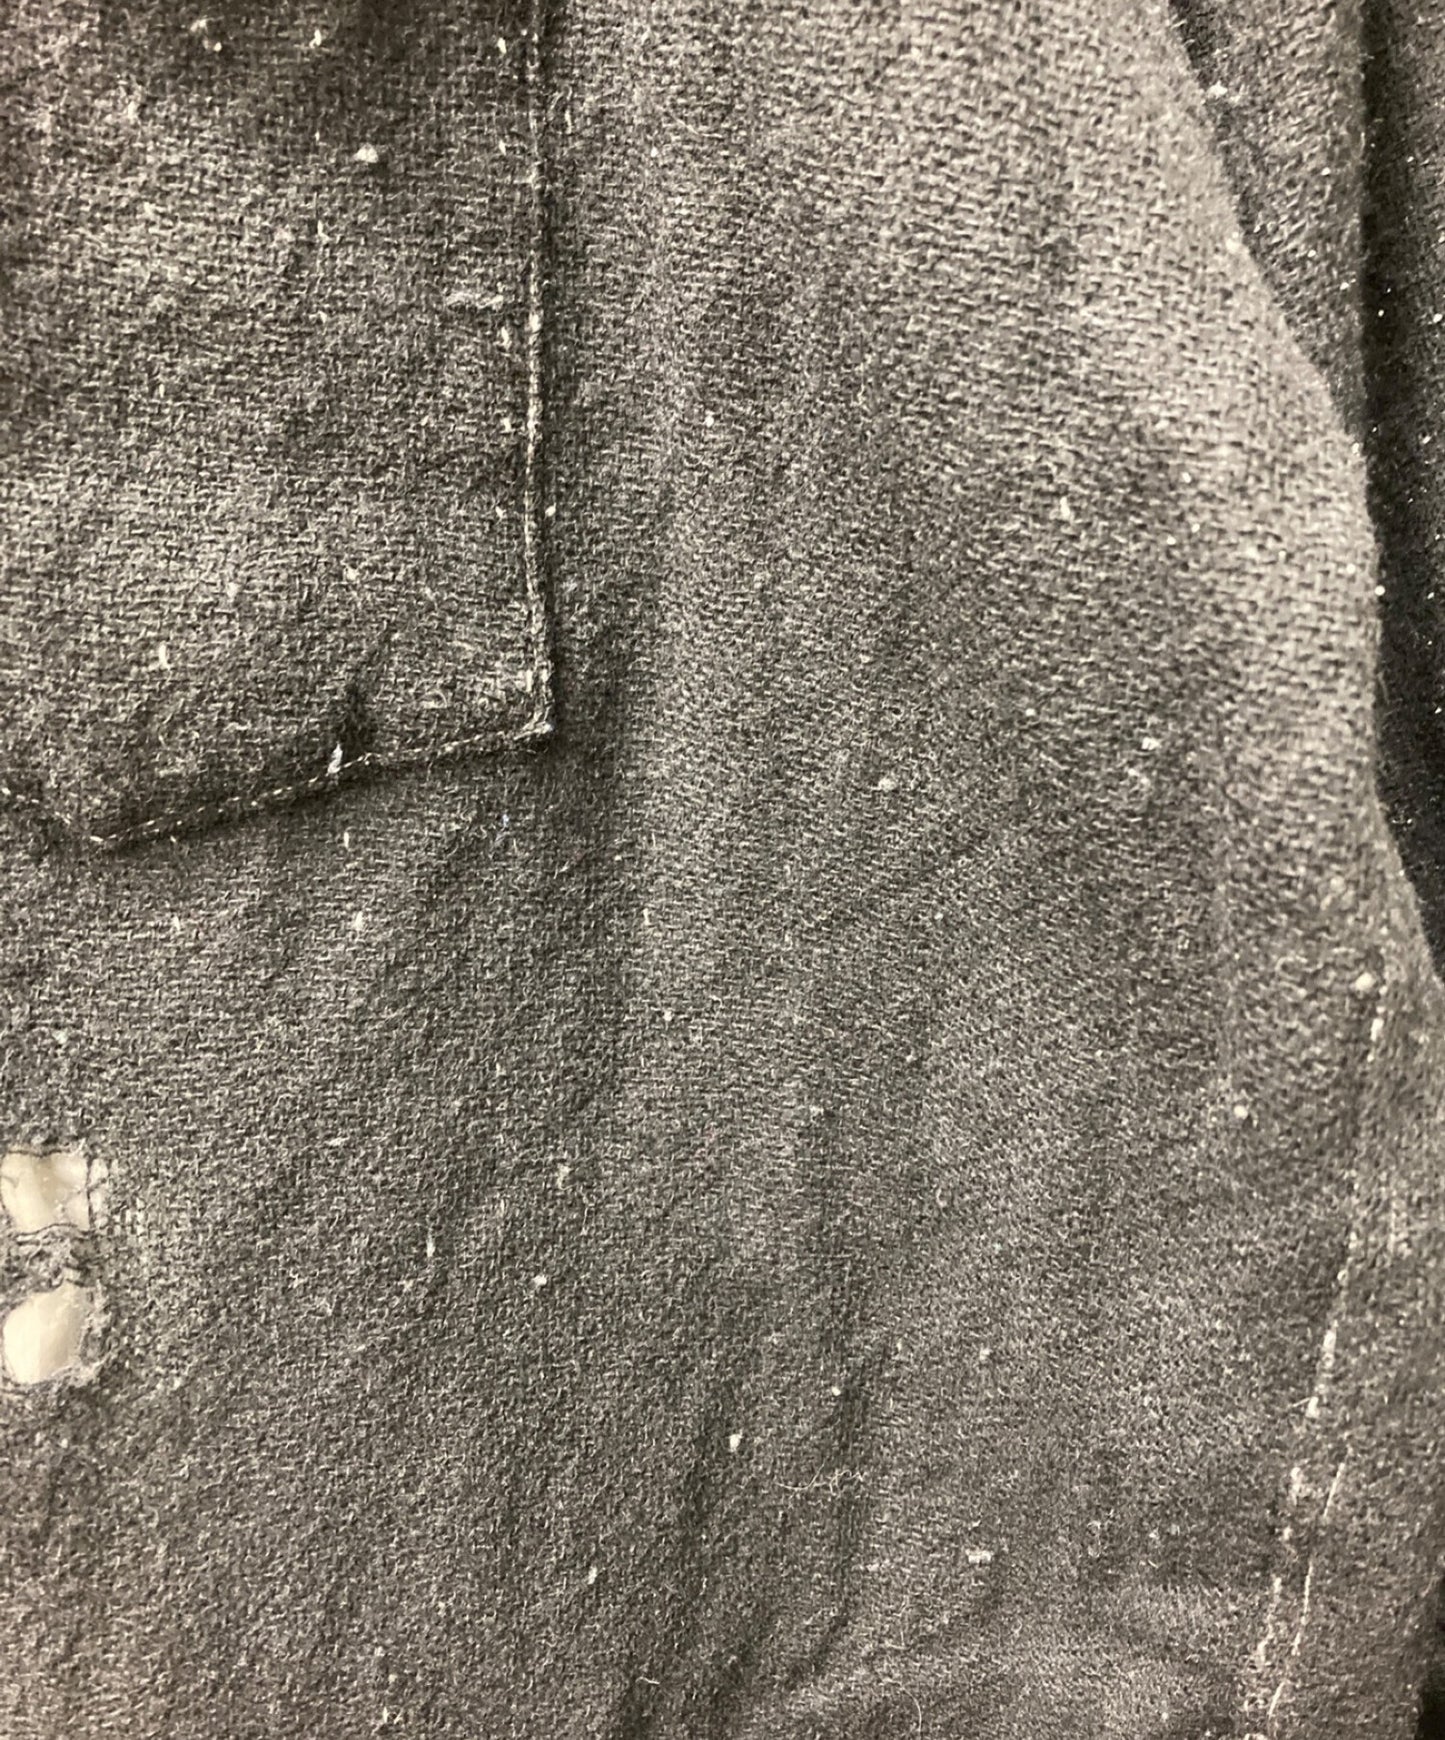 Comme des Garcons Homme 90年代棉羊毛損壞的襯衫HB-070010